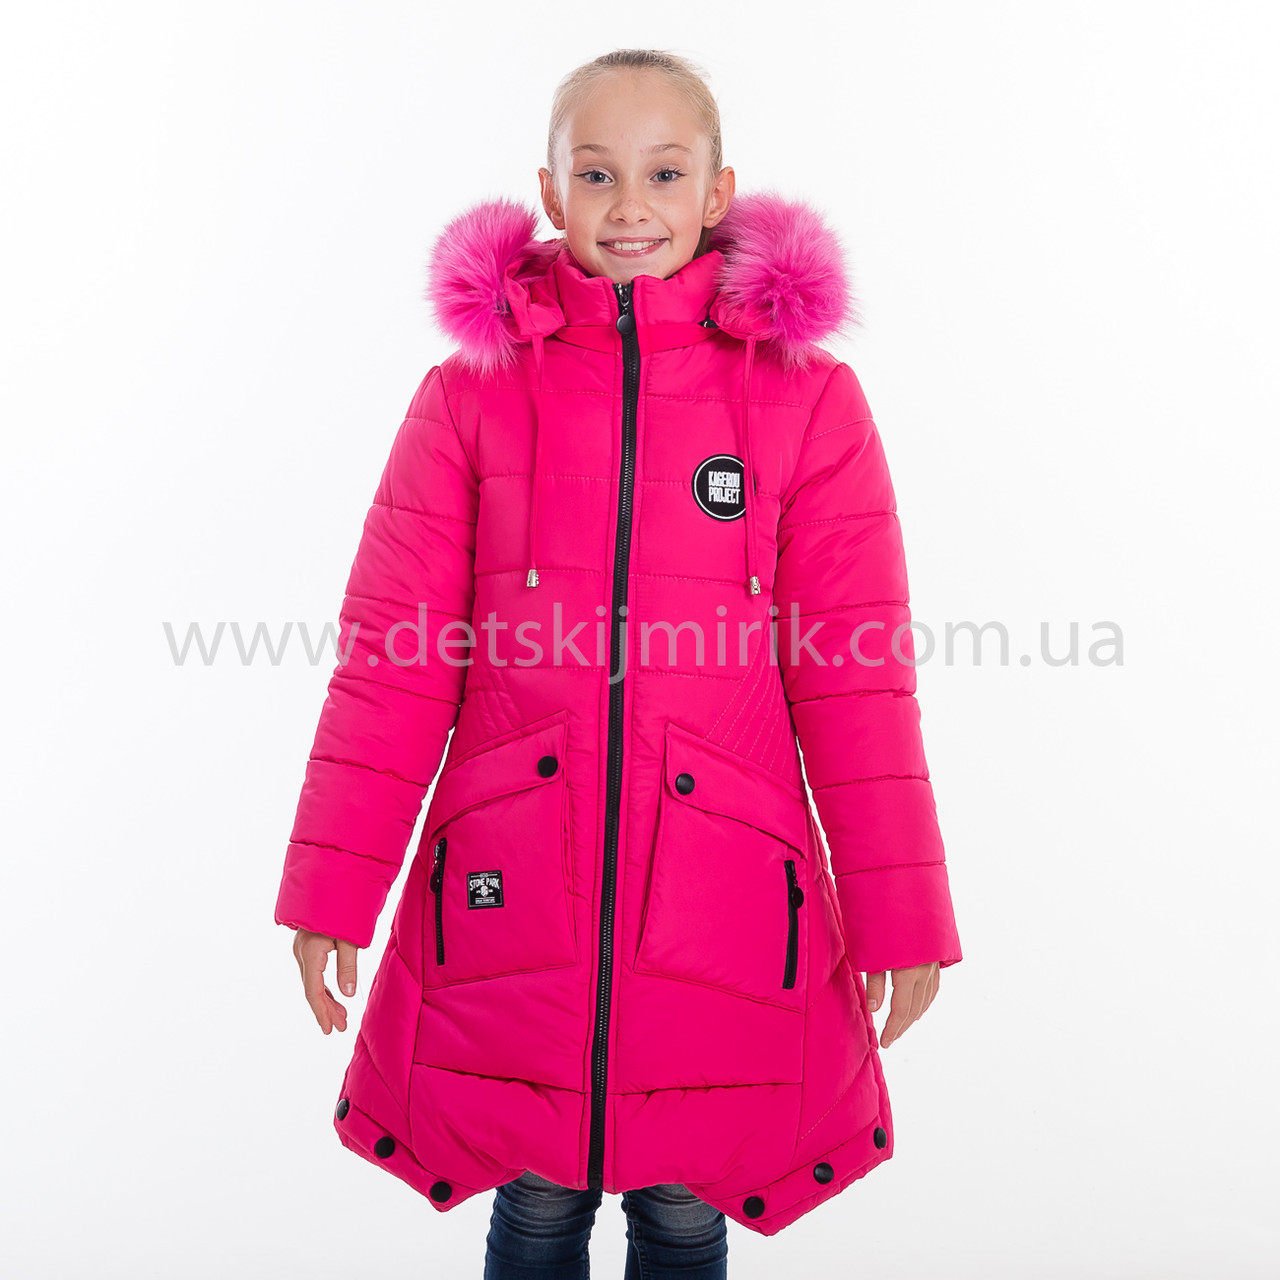 Зимова куртка для дівчинки "Ірина", Зима 2019 року